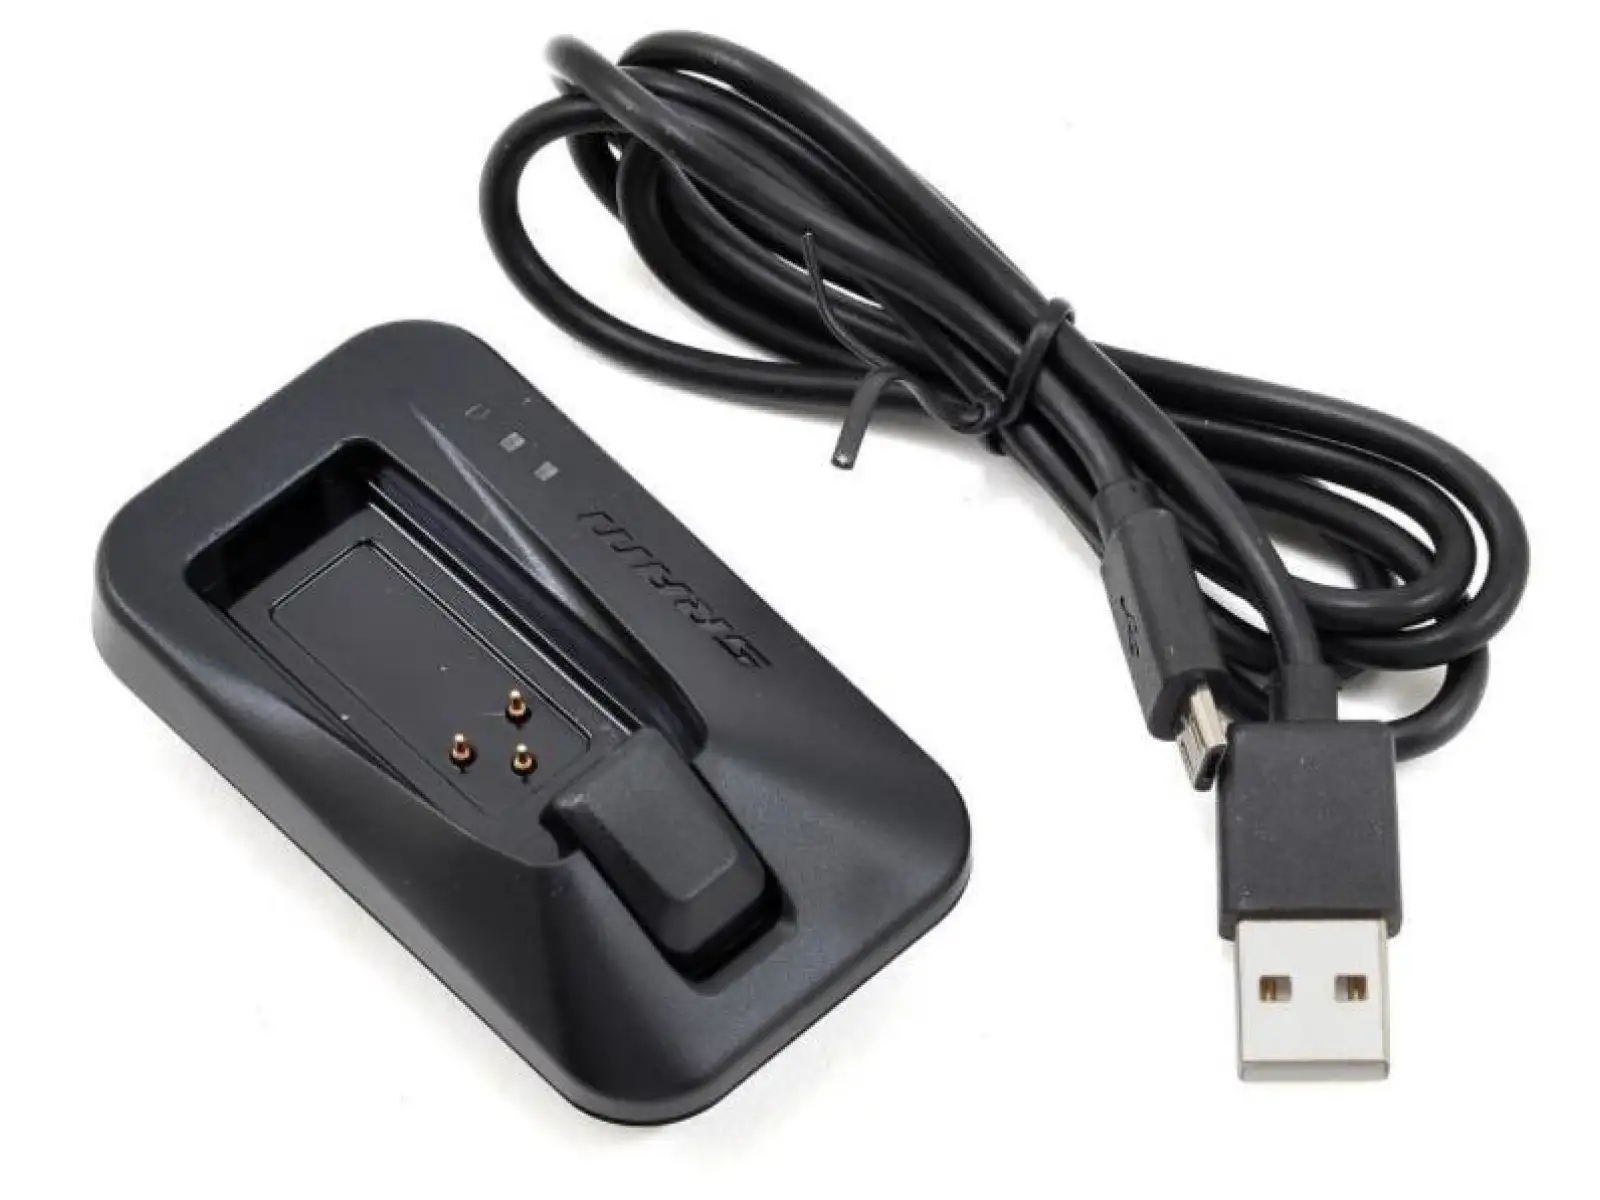 Sram eTap nabíjačka s USB káblom